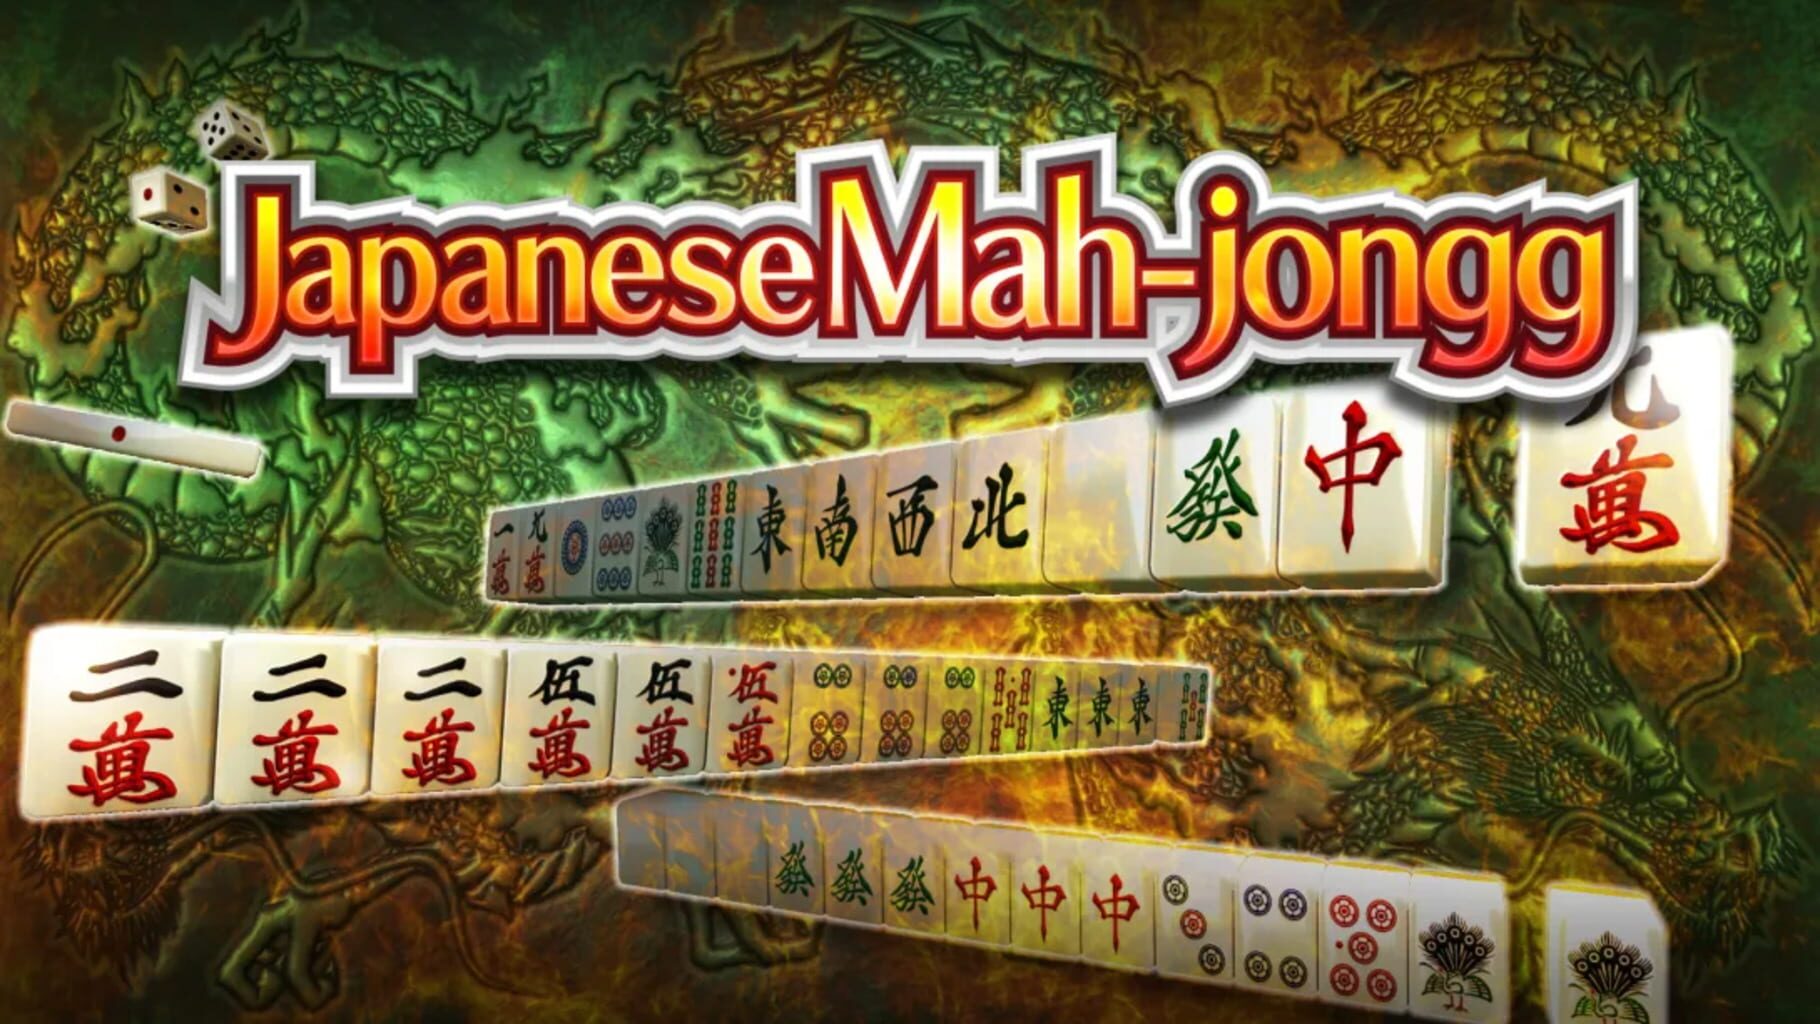 Japanese Mah-jongg